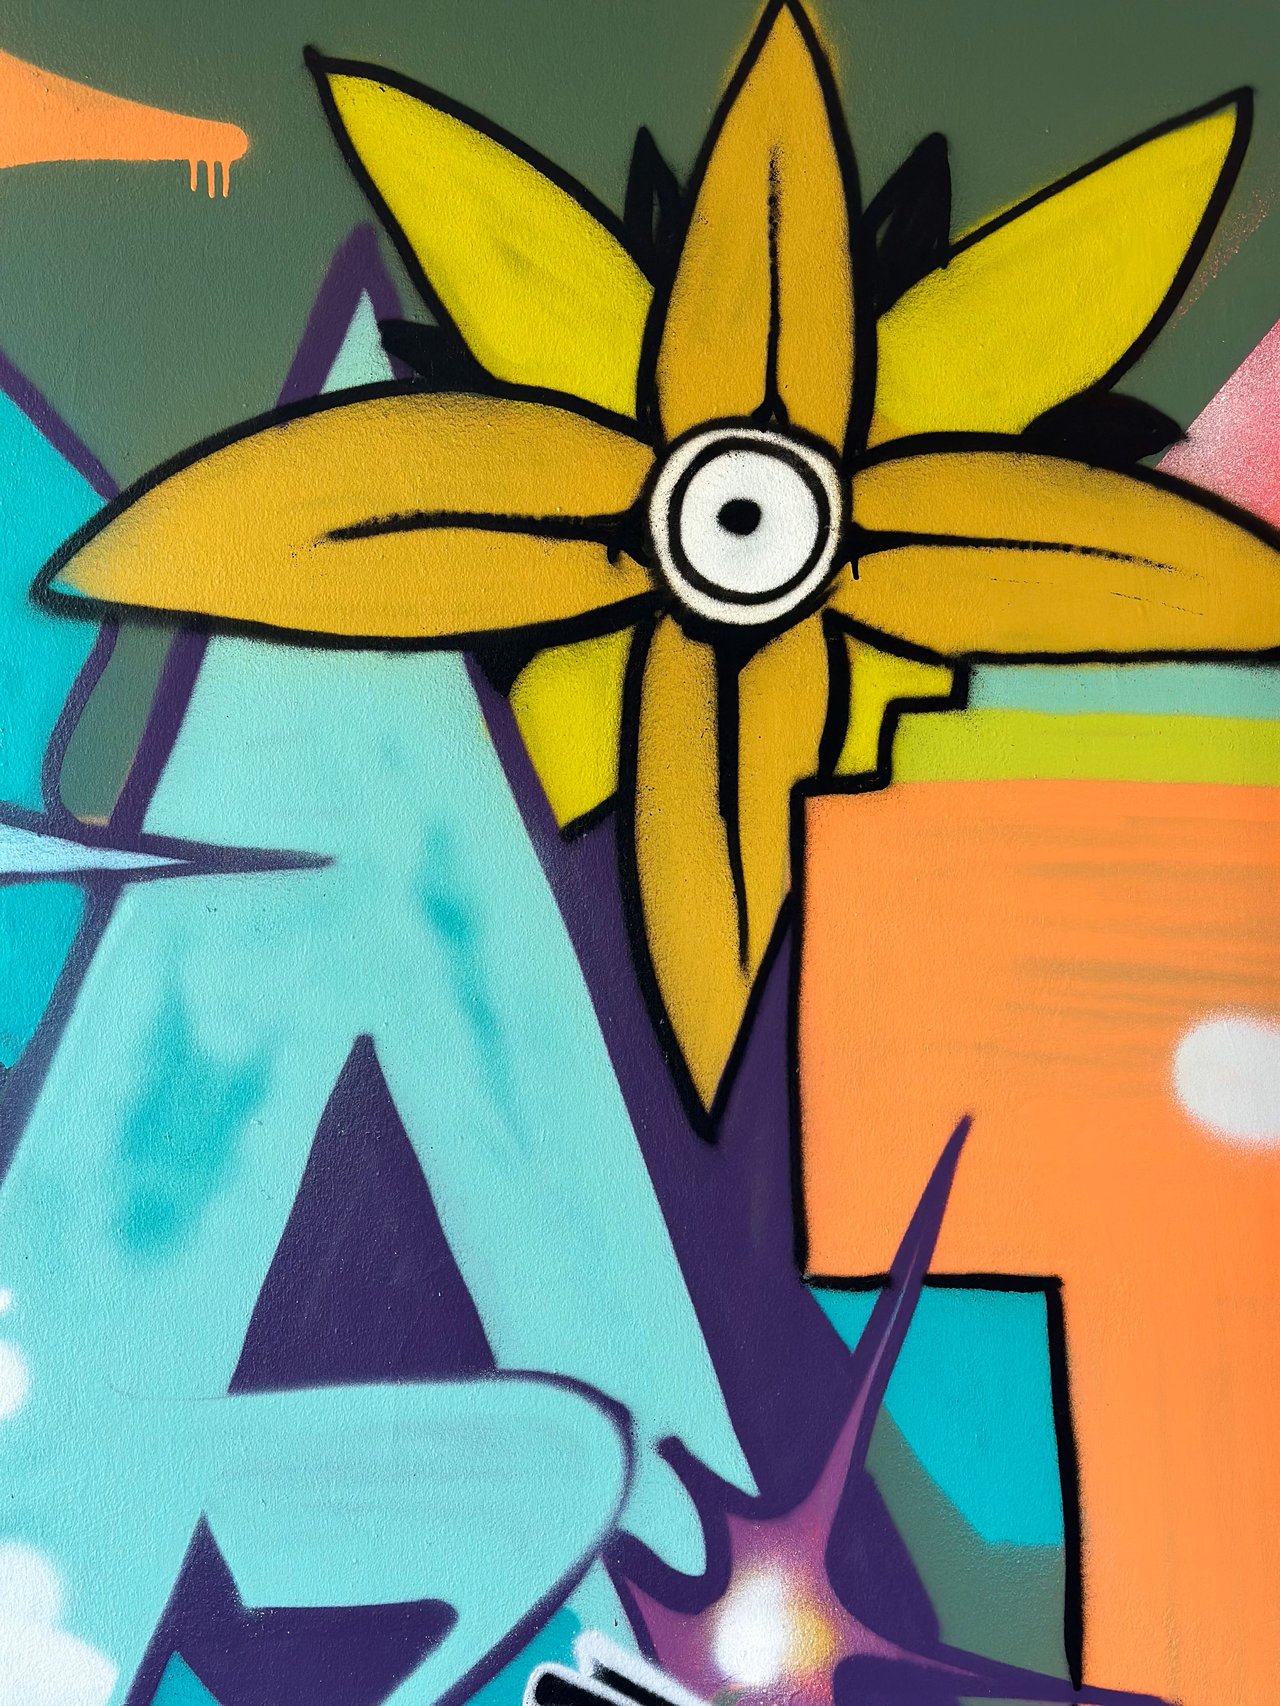 KABLOOMroom Graffiti 